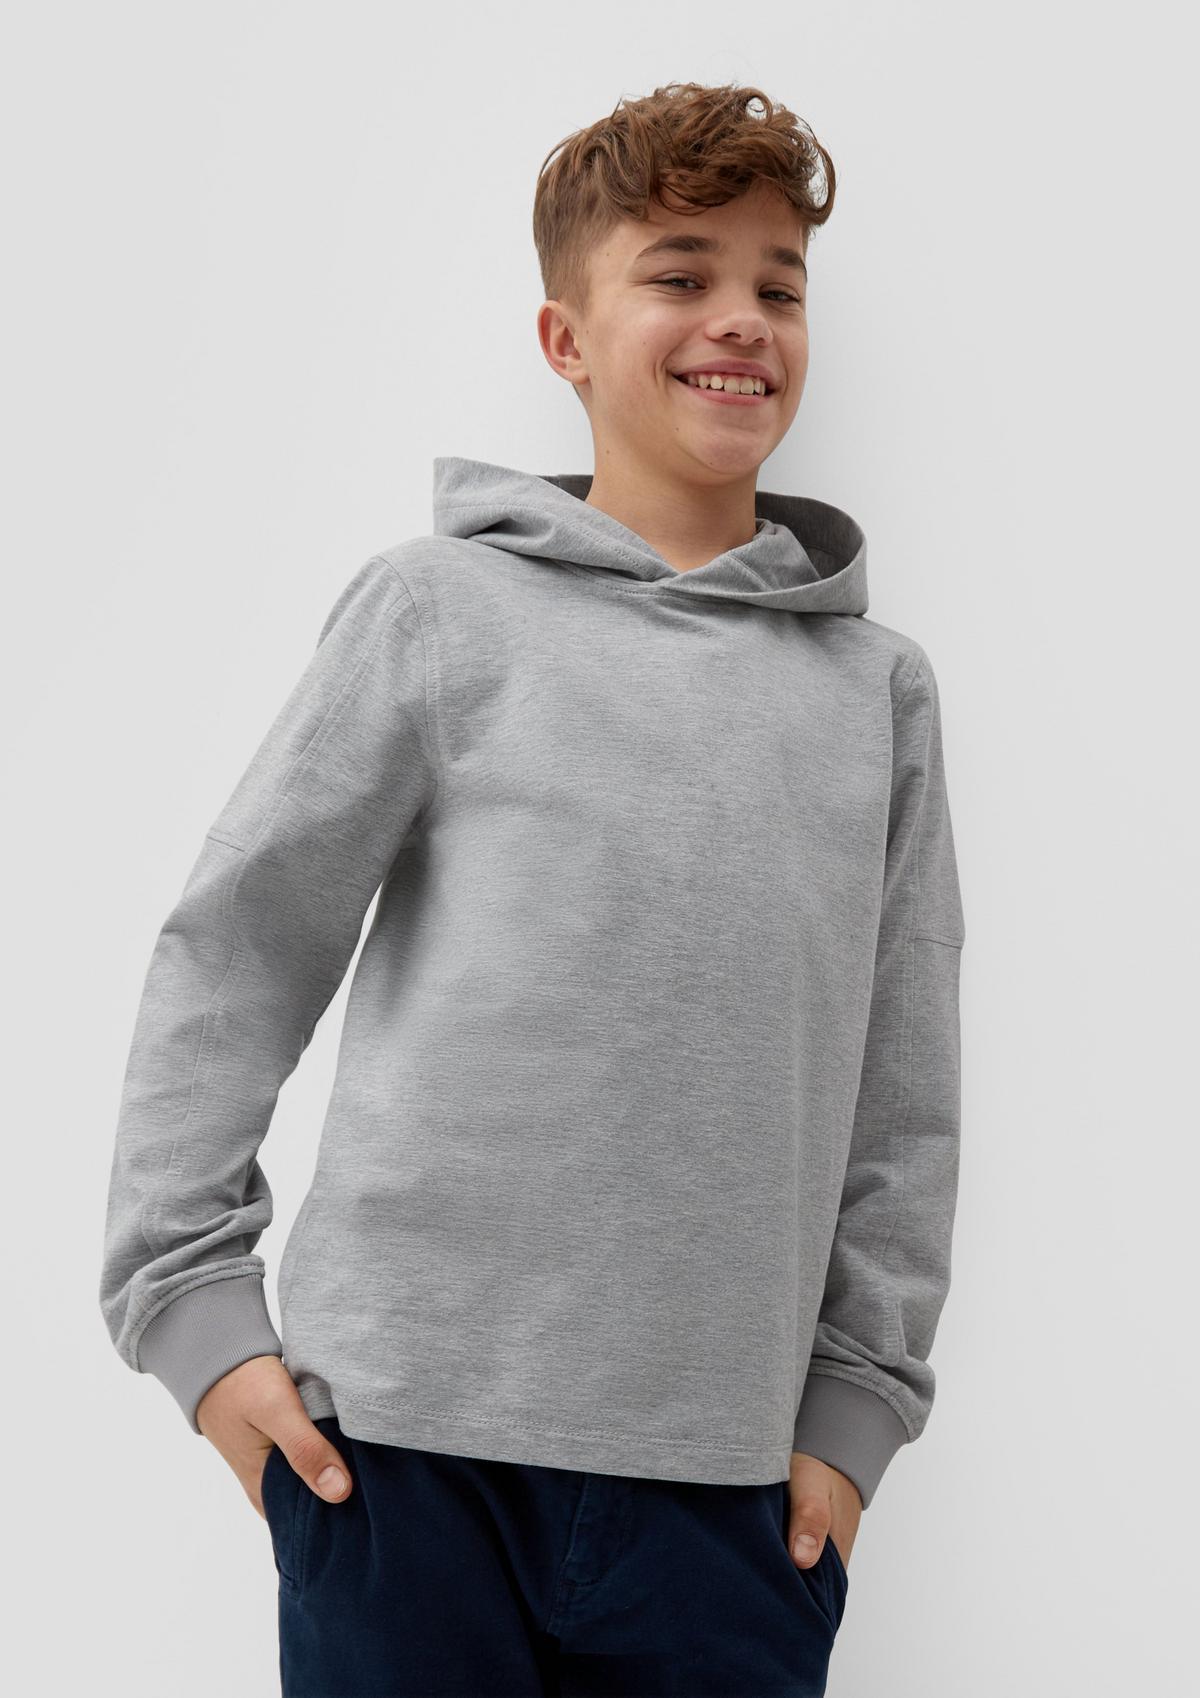 kaufen Pullover : im Sale für bei Jetzt günstig Jungen